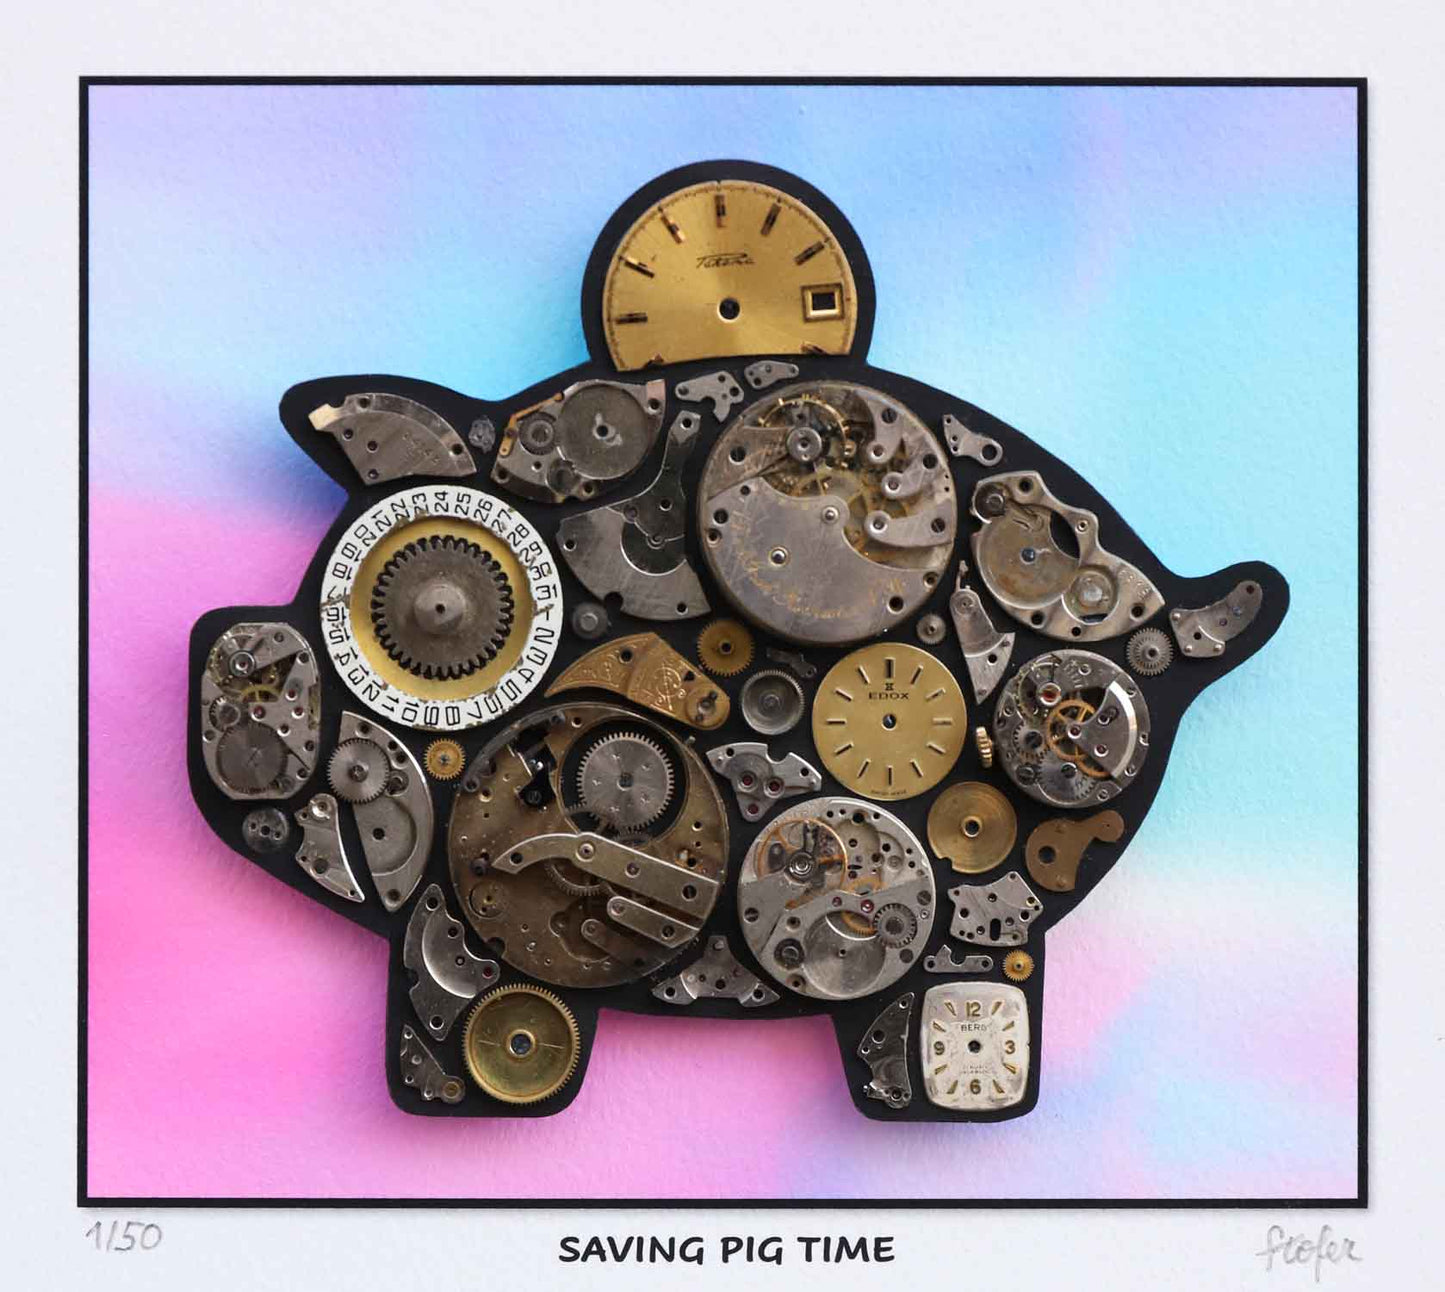 Saving pig time